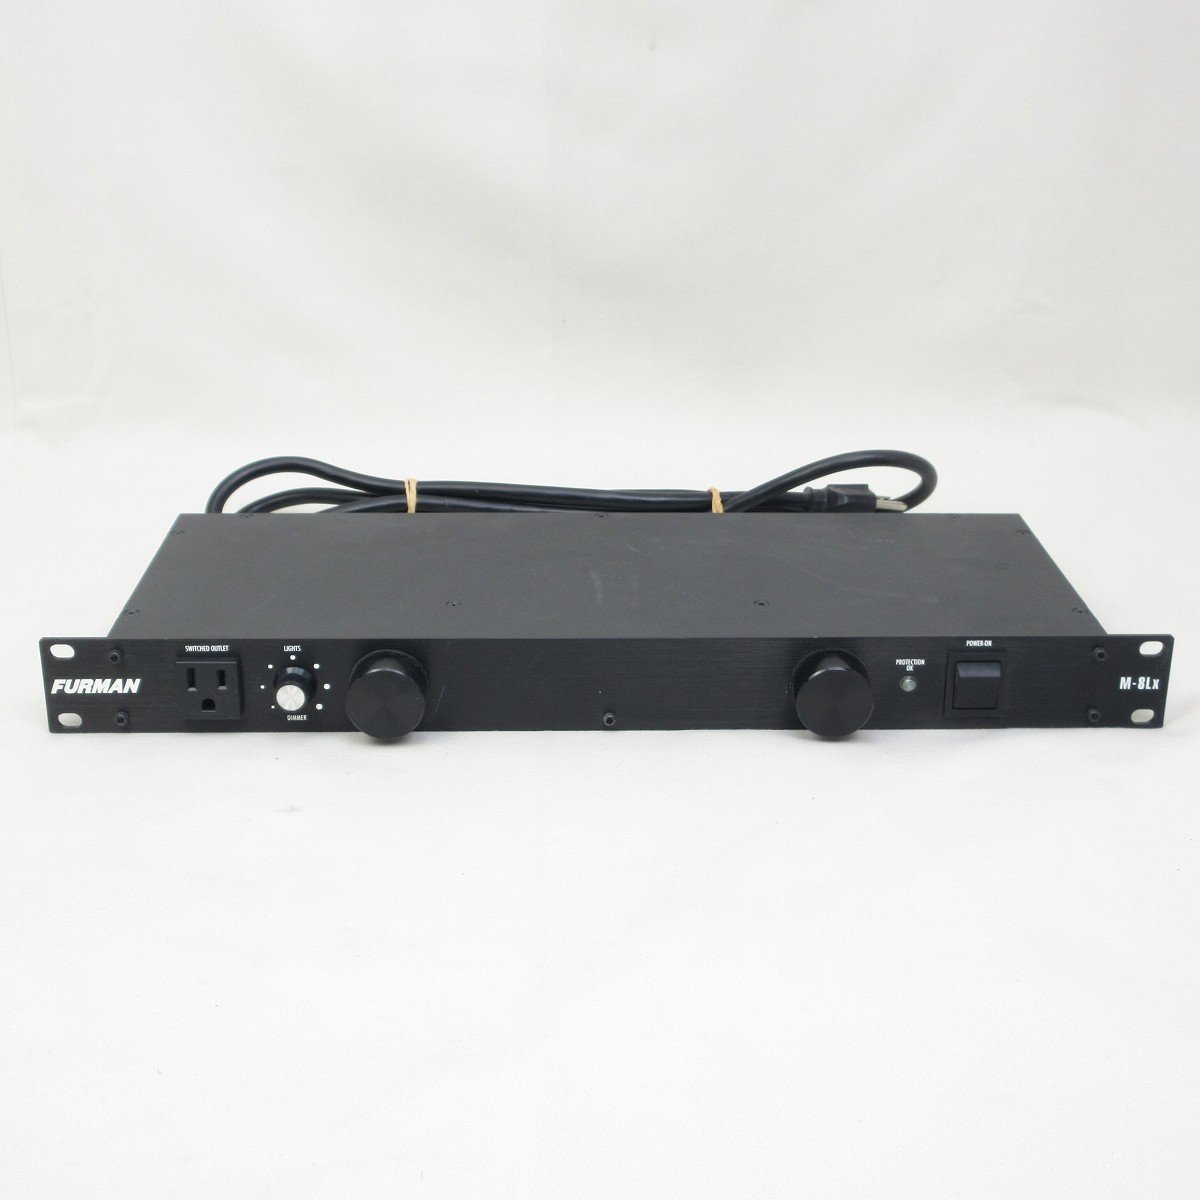 FURMANパワーコンディショナー M-8LX - オーディオ機器